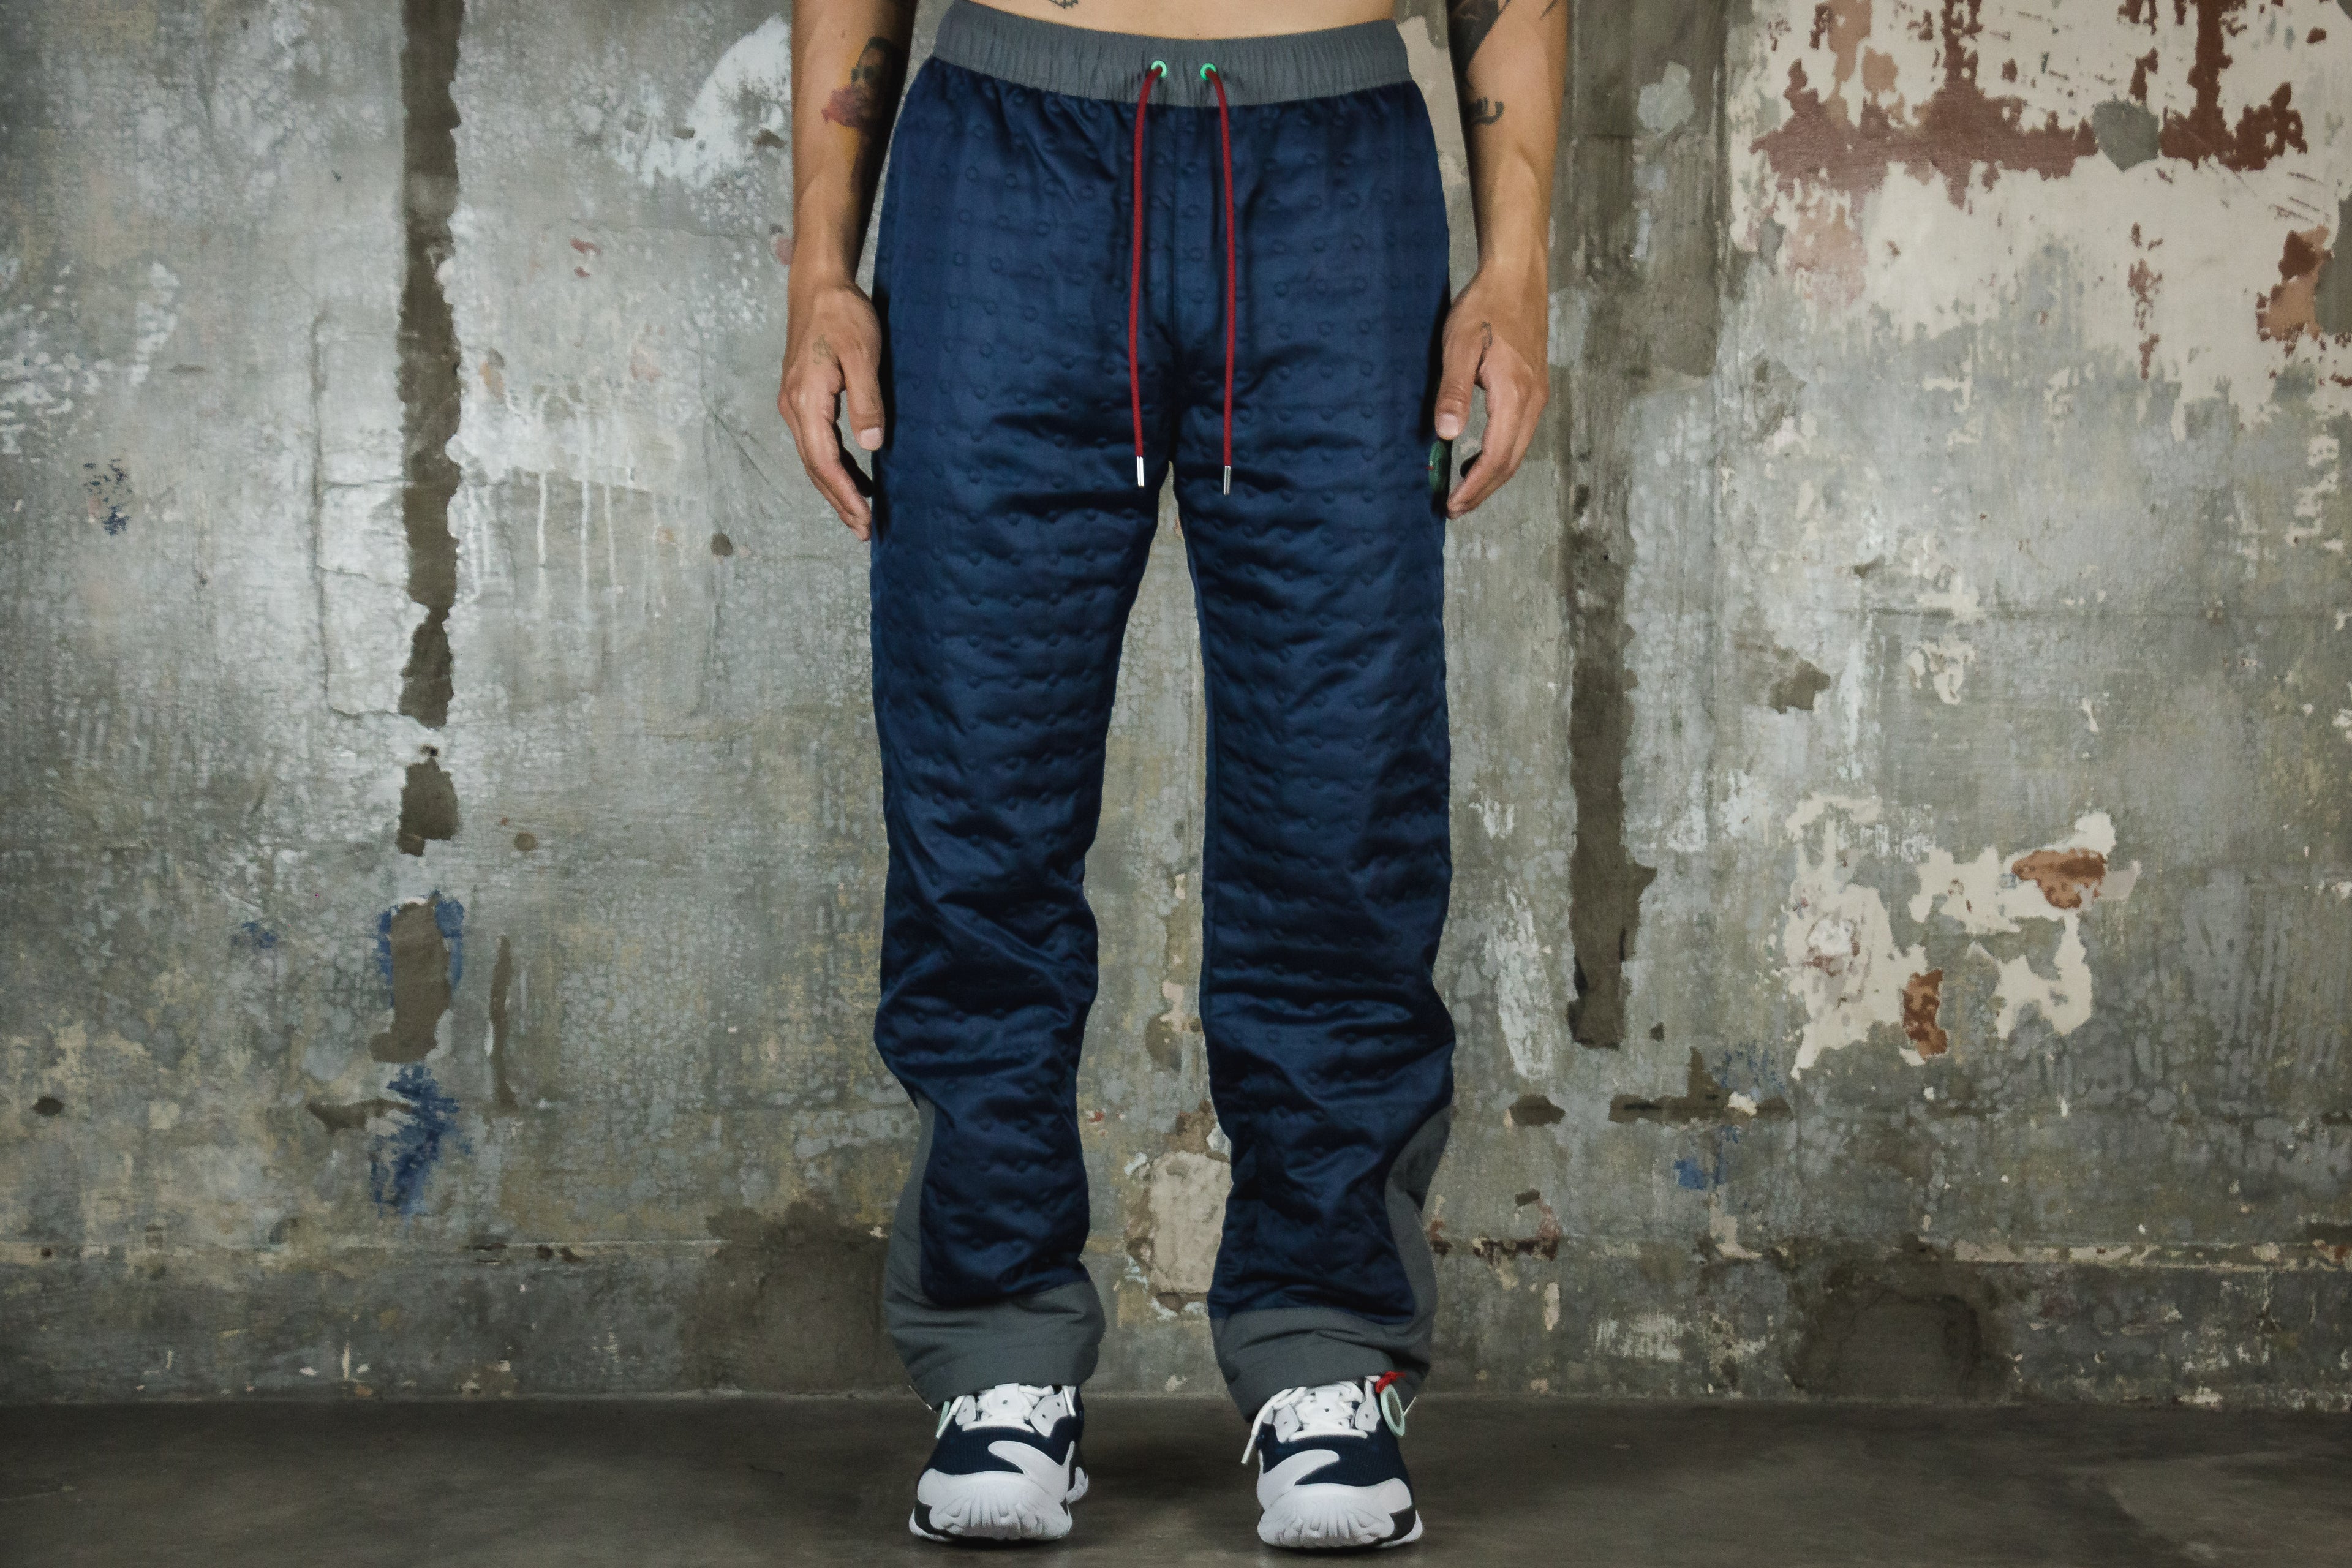 Jordan x CLOT Men's Woven Pants.